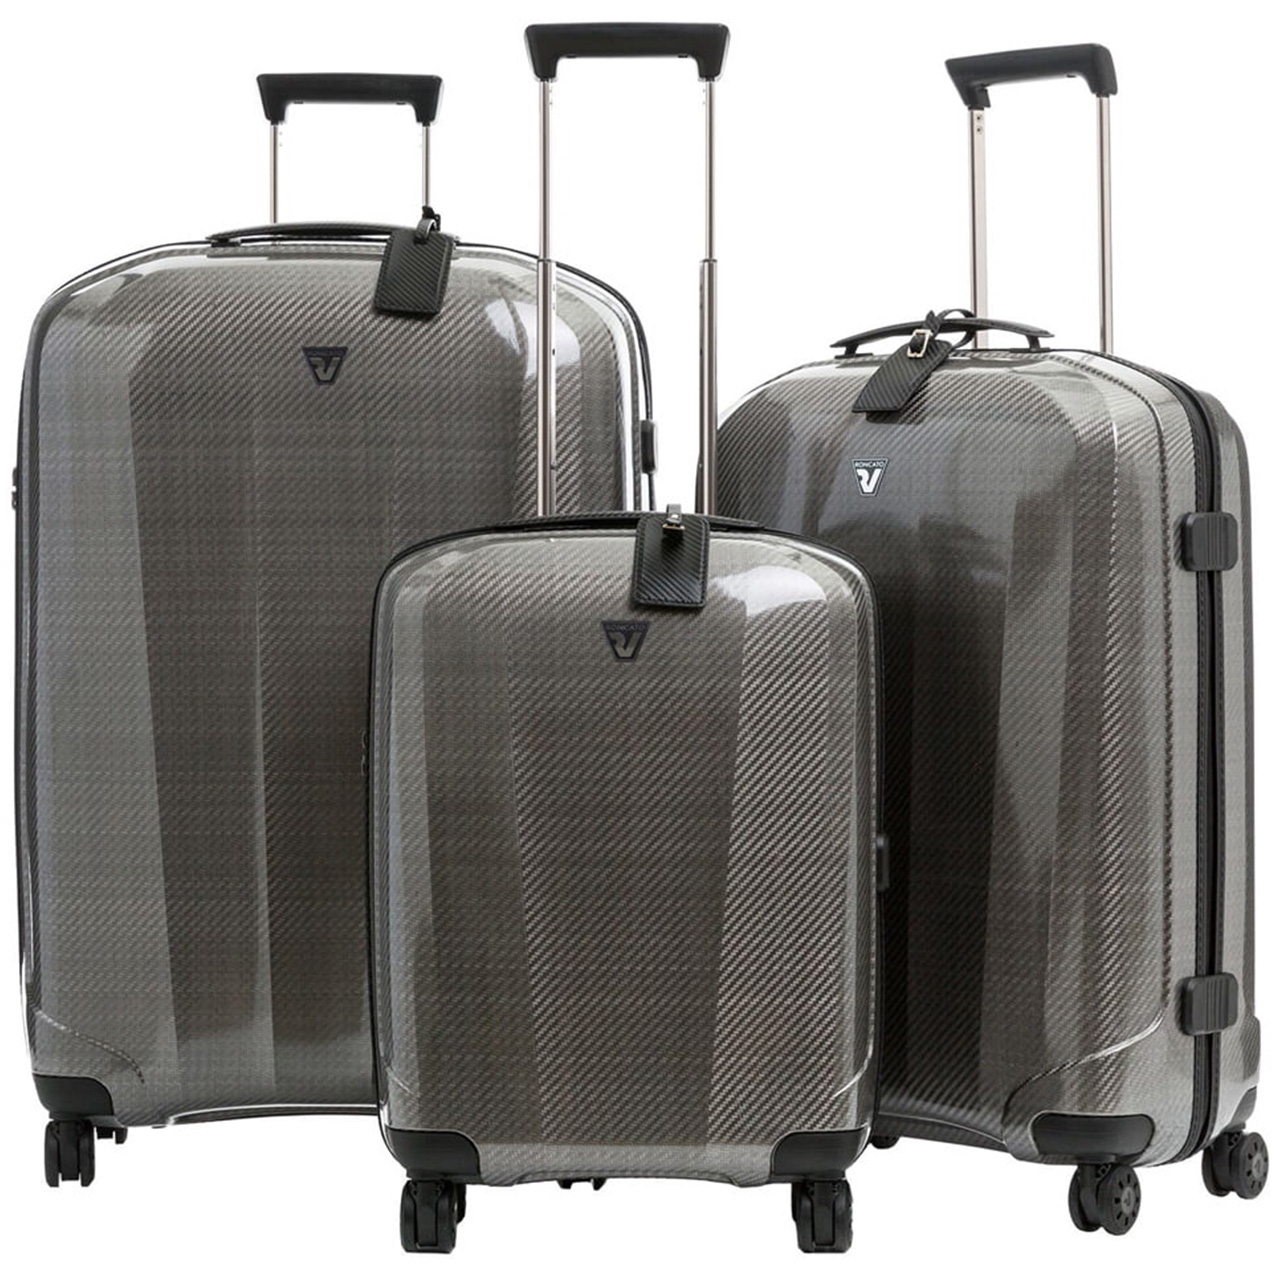 مجموعه سه عددی چمدان رونکاتو مدل 5950